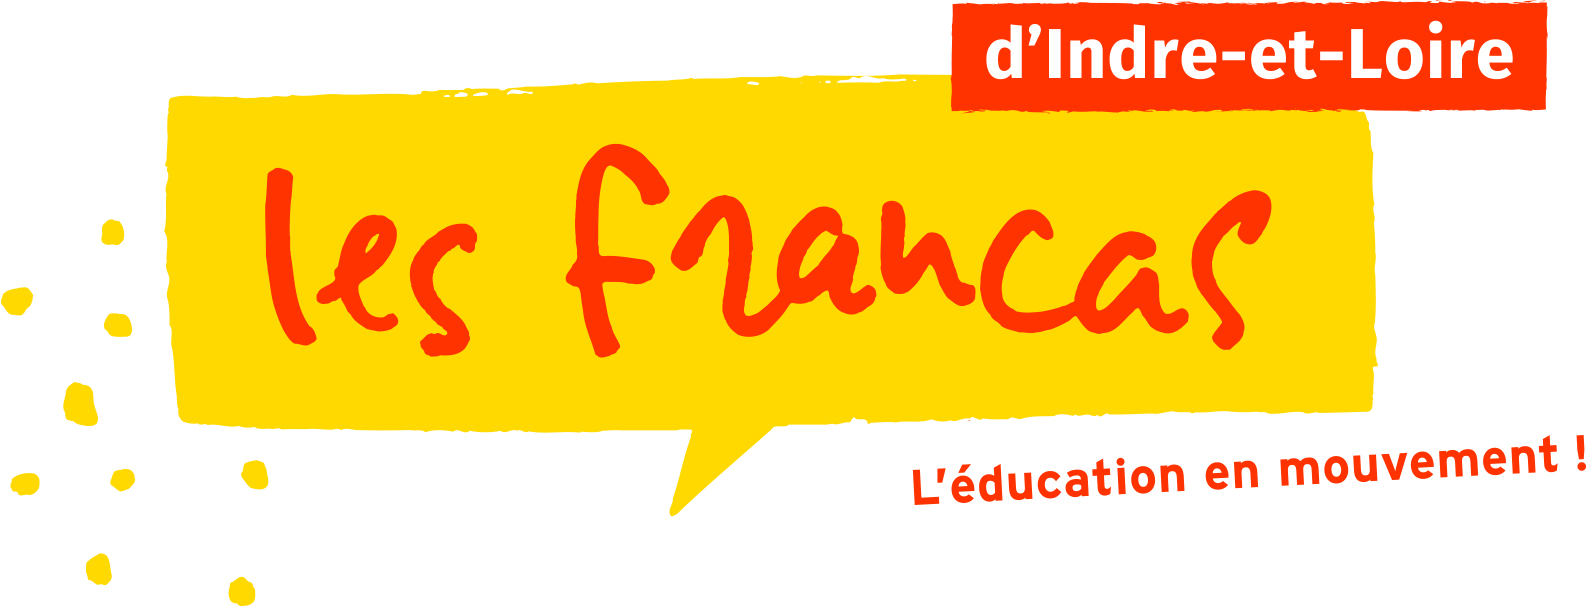 Logo de Les Francas d’Indre-et-Loire